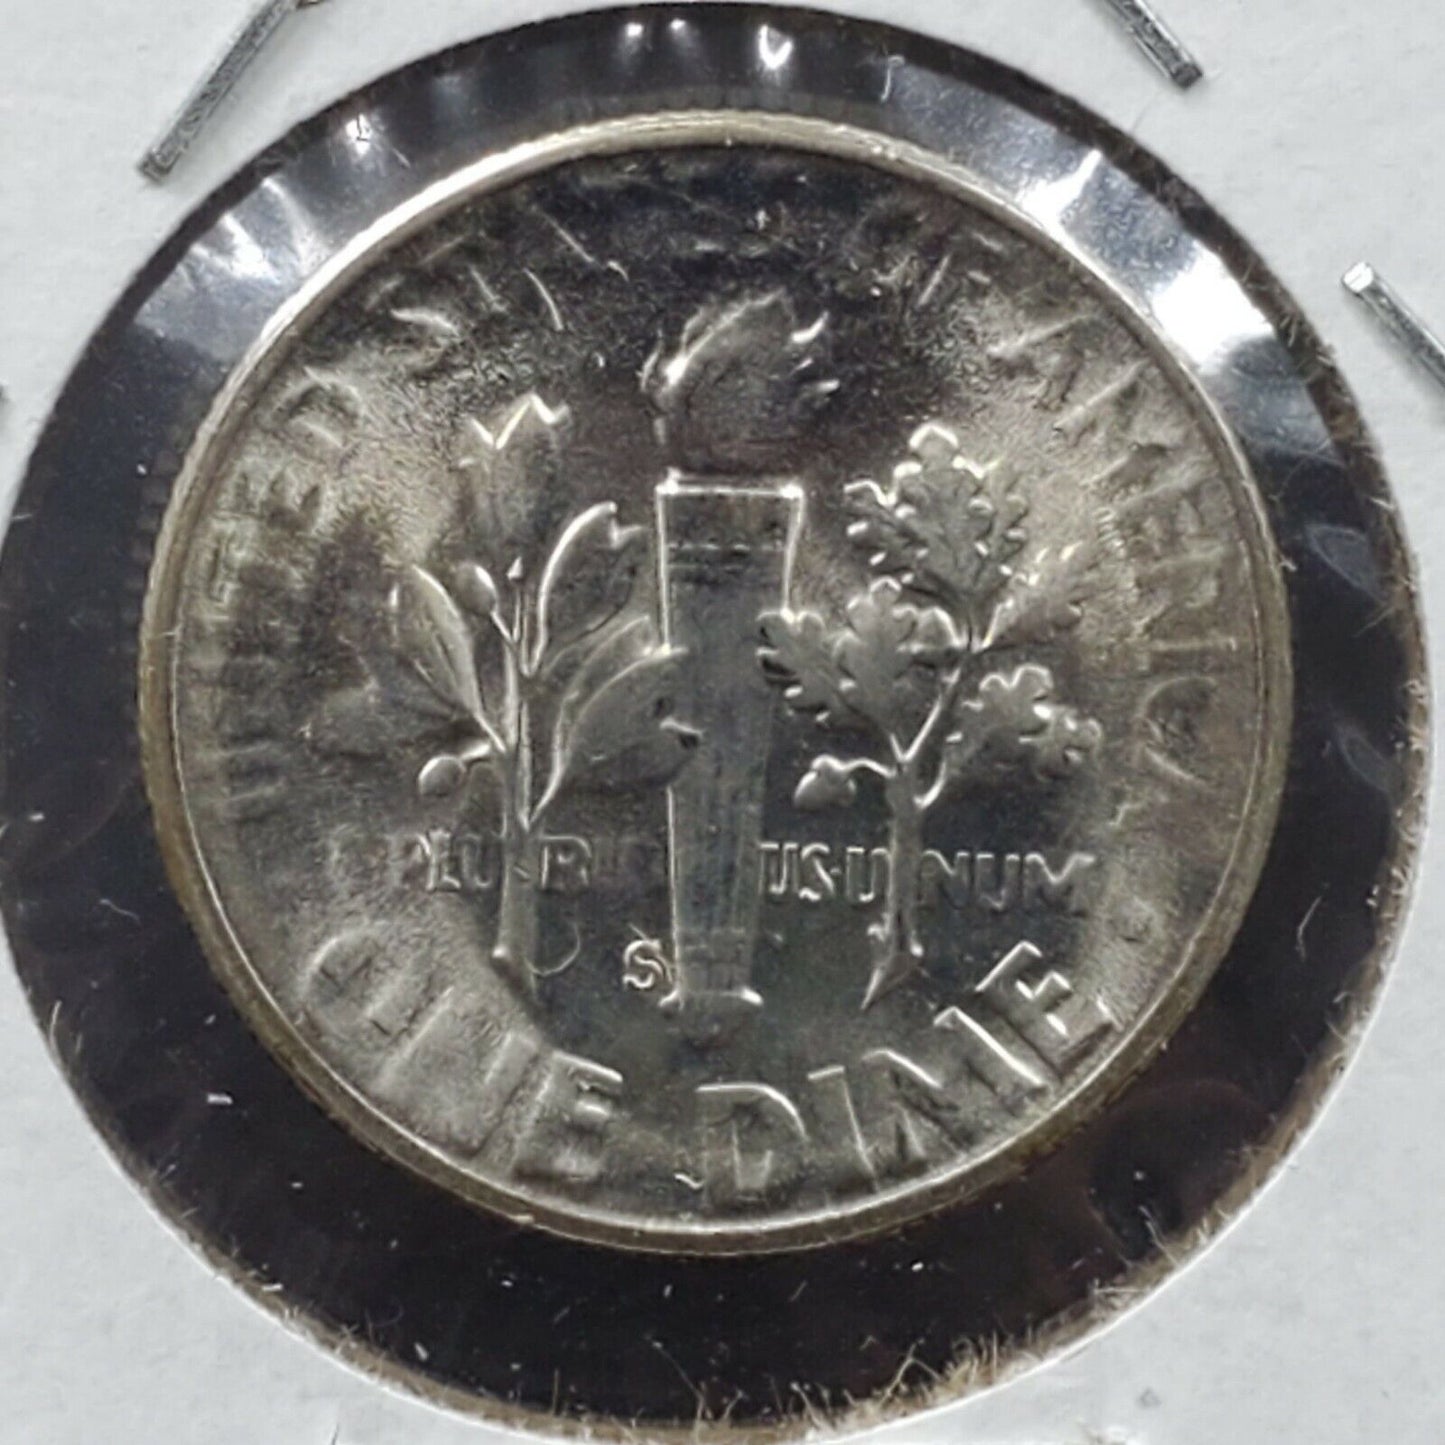 1955 S Roosevelt Silver Dime Coin Struck by Very Worn Die Error Variety